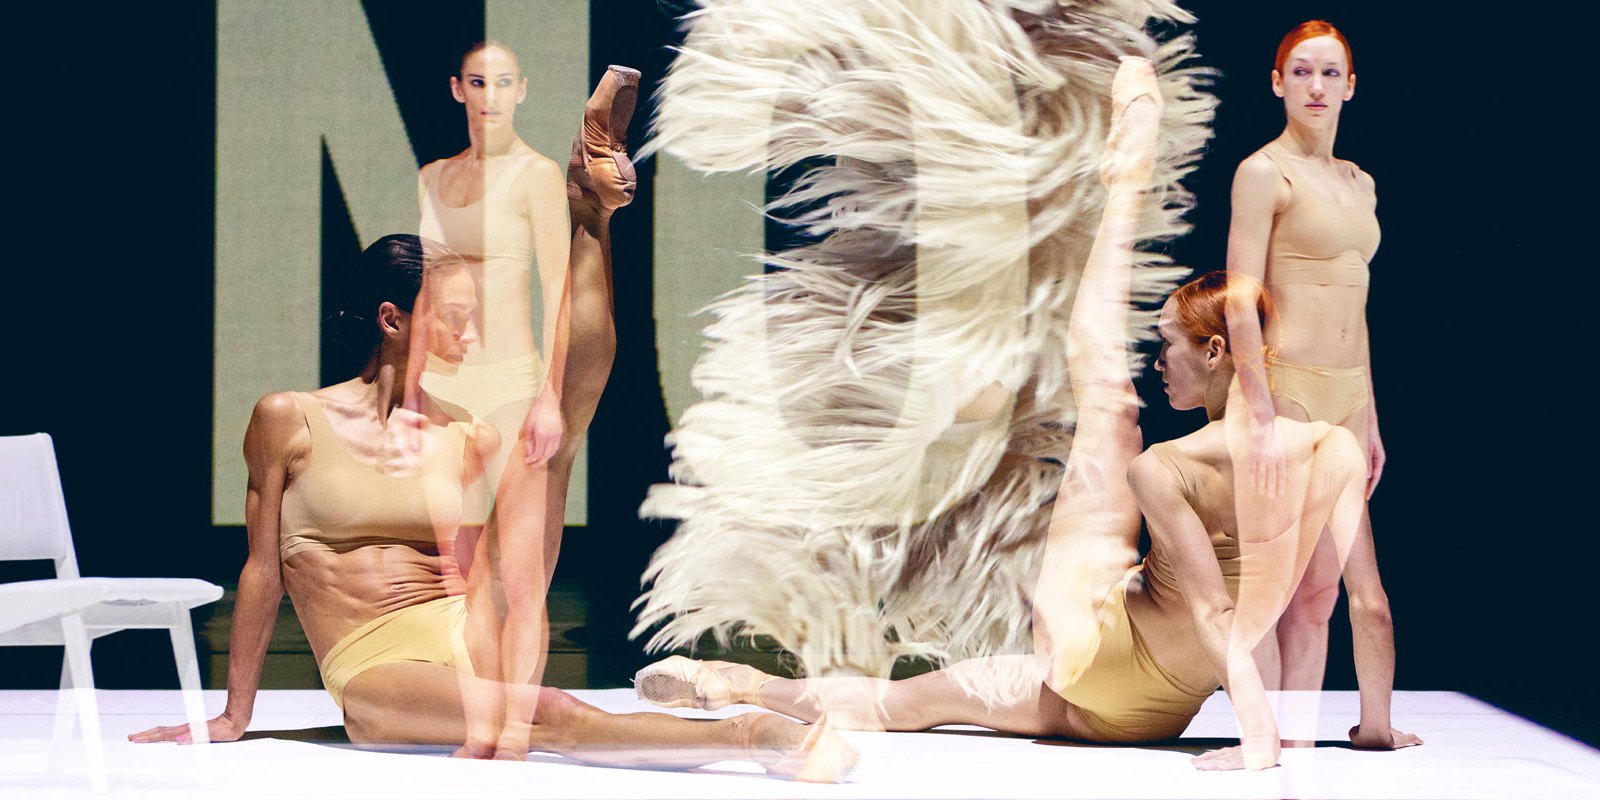 Vier Tänzerinnen auf der Bühne, darüber liegt ein Ausschnitt des Kostüms der  Hauptfigur mit fedrig wirkender Hose und das Wort "NO"